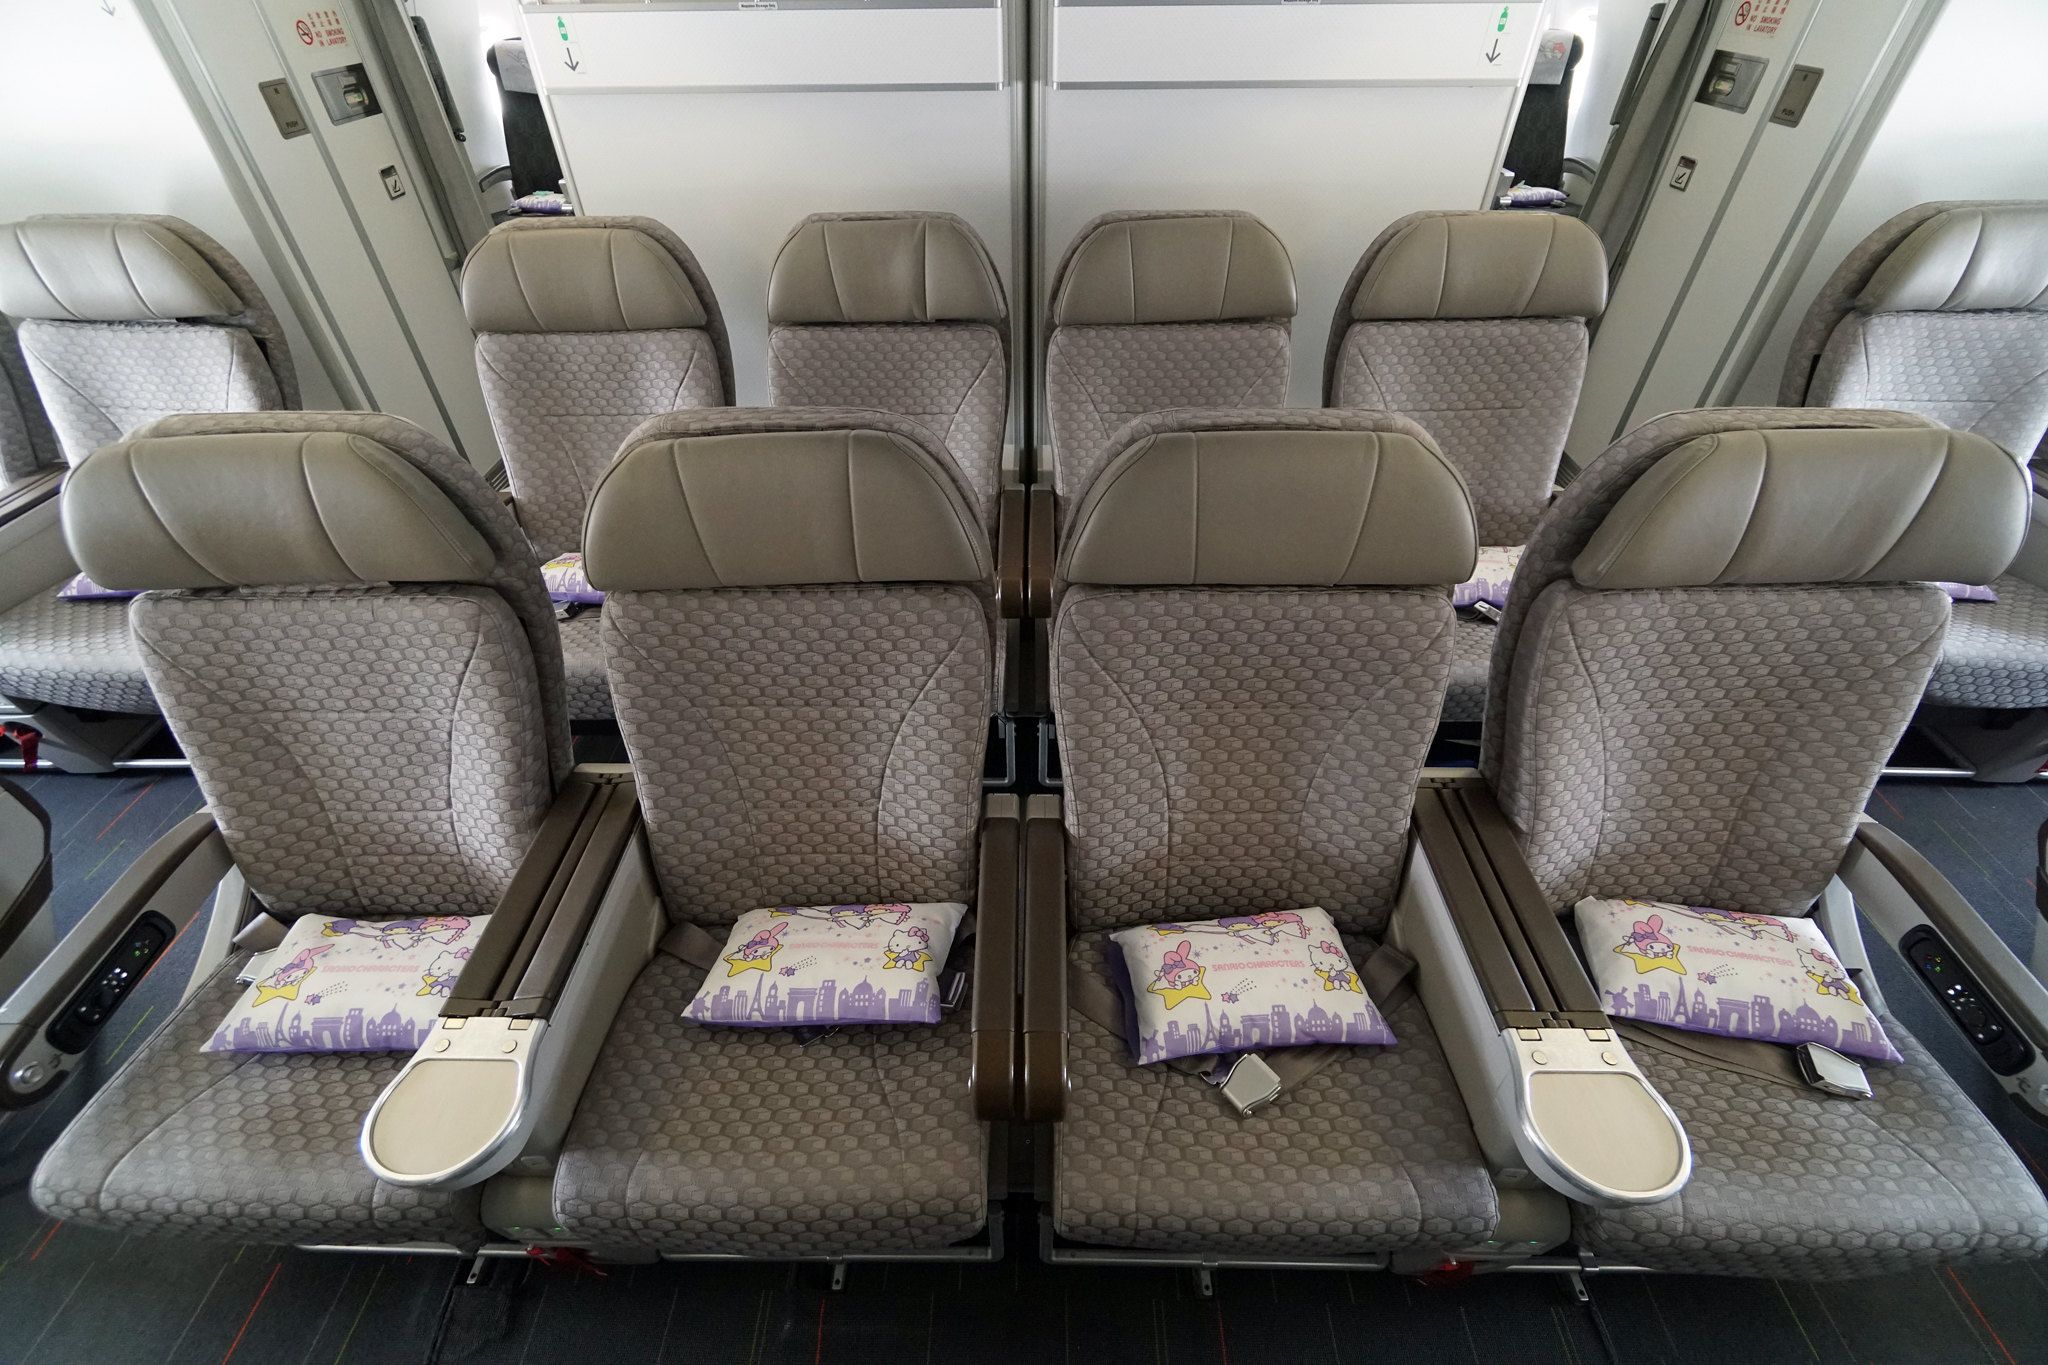 EVA Air Premium Economy Class Seats